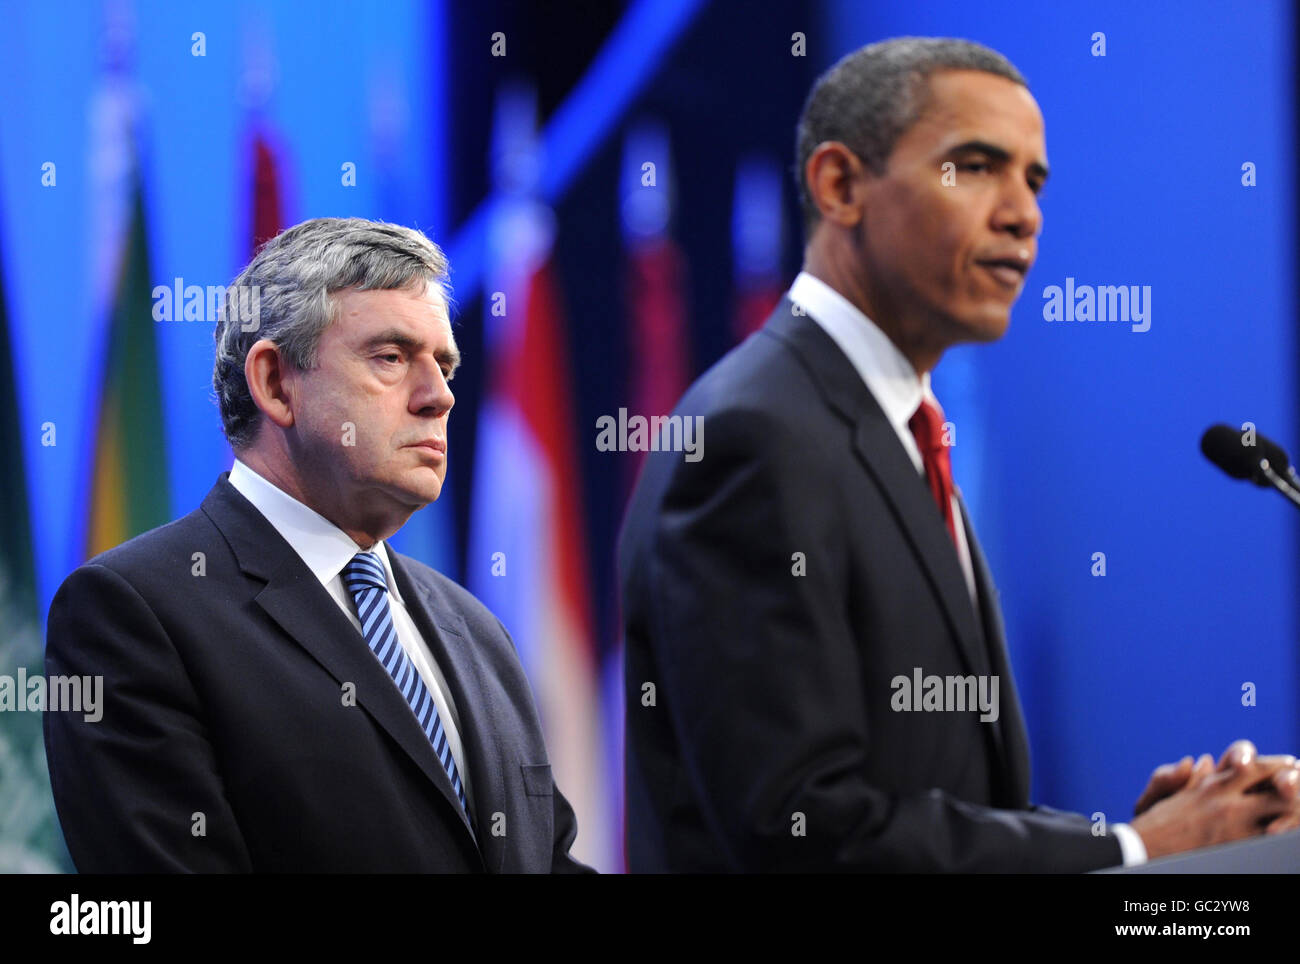 Il primo ministro britannico Gordon Brown e il presidente degli Stati Uniti Barack Obama hanno fatto oggi una dichiarazione al vertice del G20 a Pittsburgh sulla nuova intelligence sulle capacità nucleari dell'Iran. Foto Stock